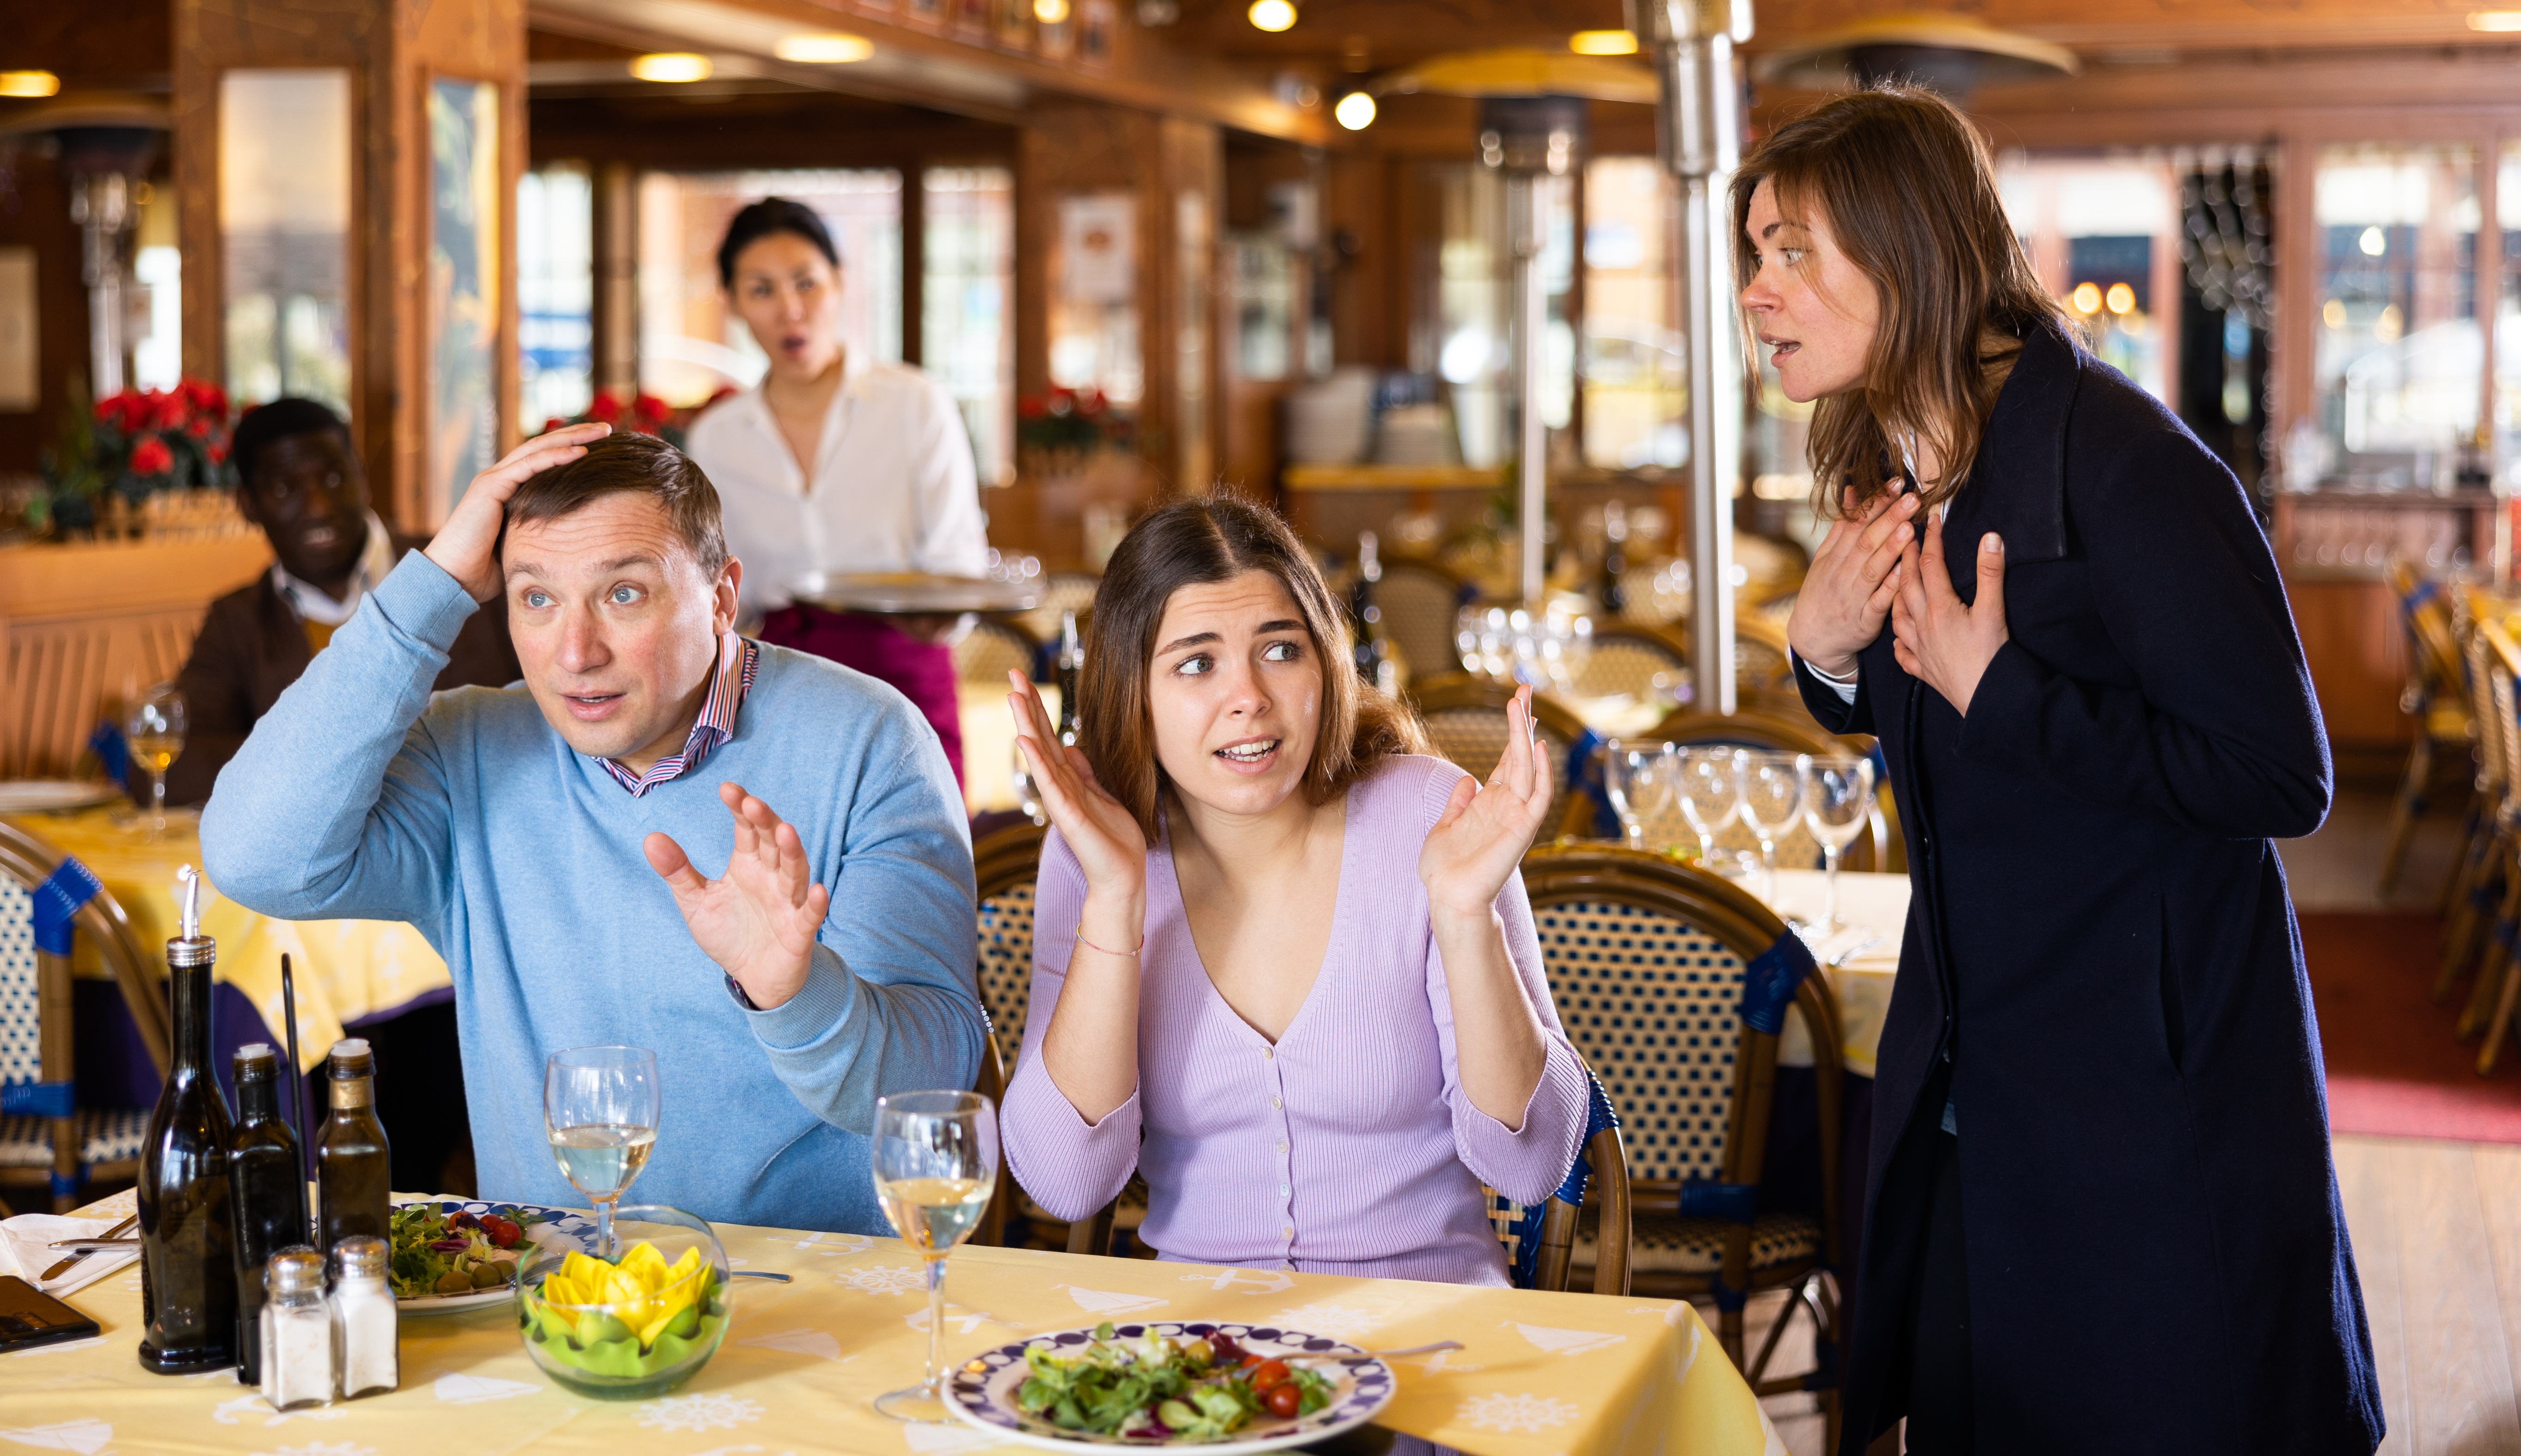 Des gens se disputent dans un restaurant | Source : Getty Images